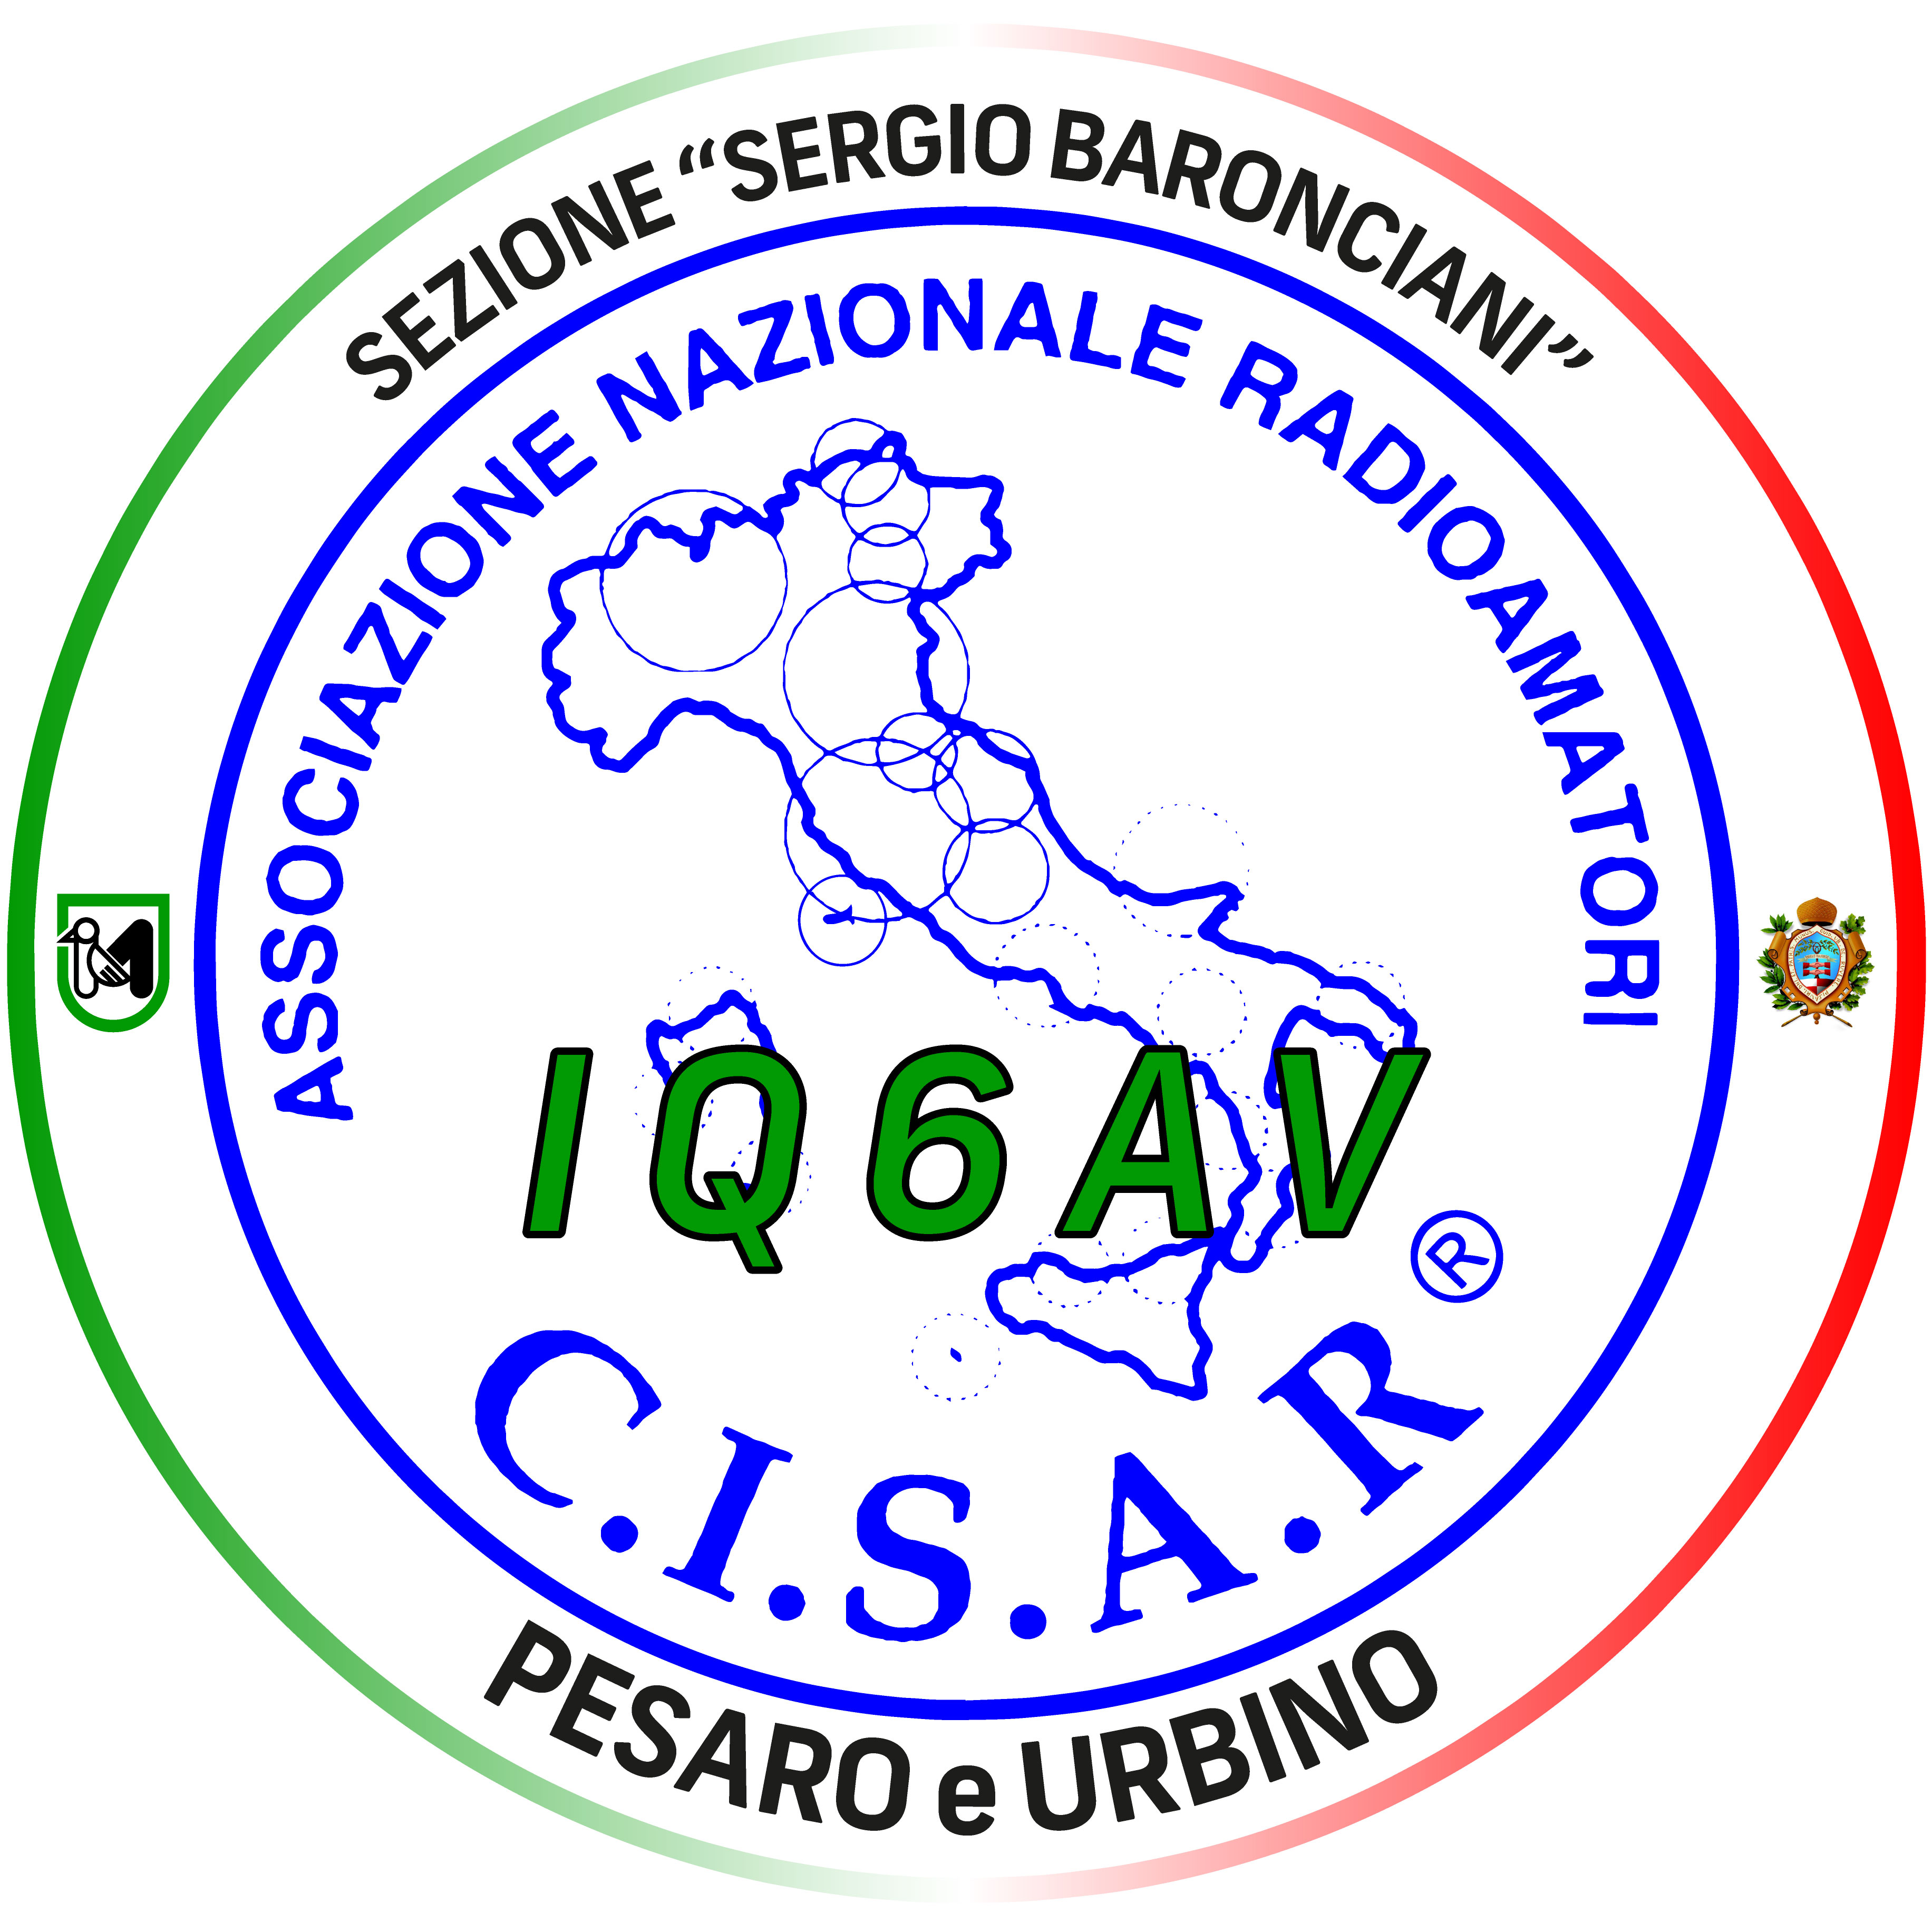 CISAR Pesaro e Urbino